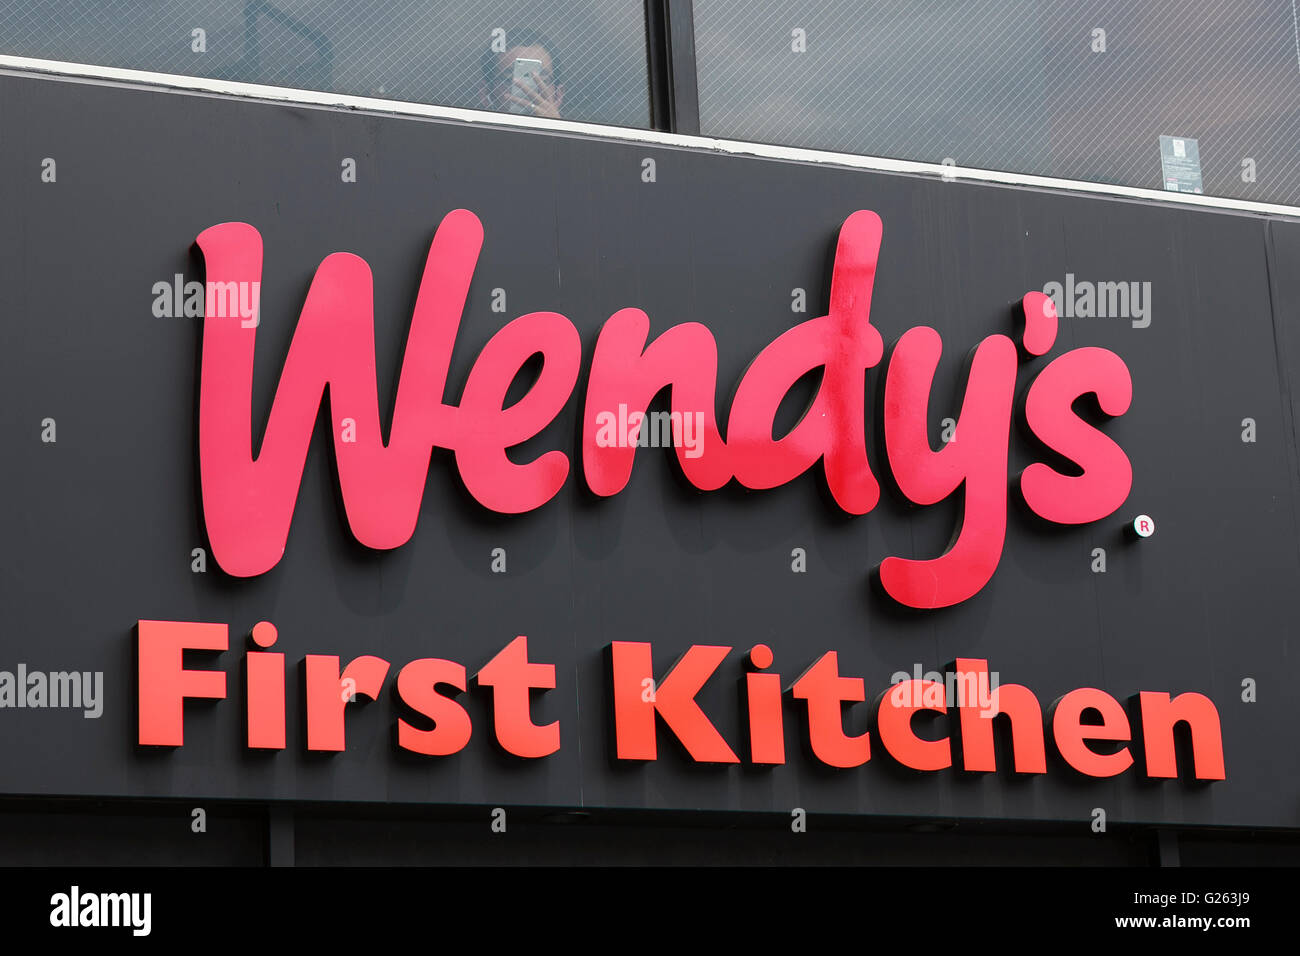 Un combinato di Wendy e First-Kitchen cartello sul display al di fuori del suo comune di un ristorante fast food in Ueno il 24 maggio 2016, Tokyo, Giappone. Bevanda giapponese fabbricante Suntory Holdings Ltd. ha annunciato lunedì che venderà le sue azioni in First-Kitchen Ltd. hamburger a catena Wendy's Giappone LLC. La catena First-Kitchen, che è stato lanciato in 1977, gestisce circa 135 punti vendita nell'area metropolitana di Tokyo e il Giappone occidentale e ha avuto un fatturato di ¥8,7 miliardi ($79 milioni di euro) nel 2015. Wendy piani per mantenere il marchio First-Kitchen dopo l'acquisizione e operare con marchio congiunto ristoranti. (Foto di Foto Stock